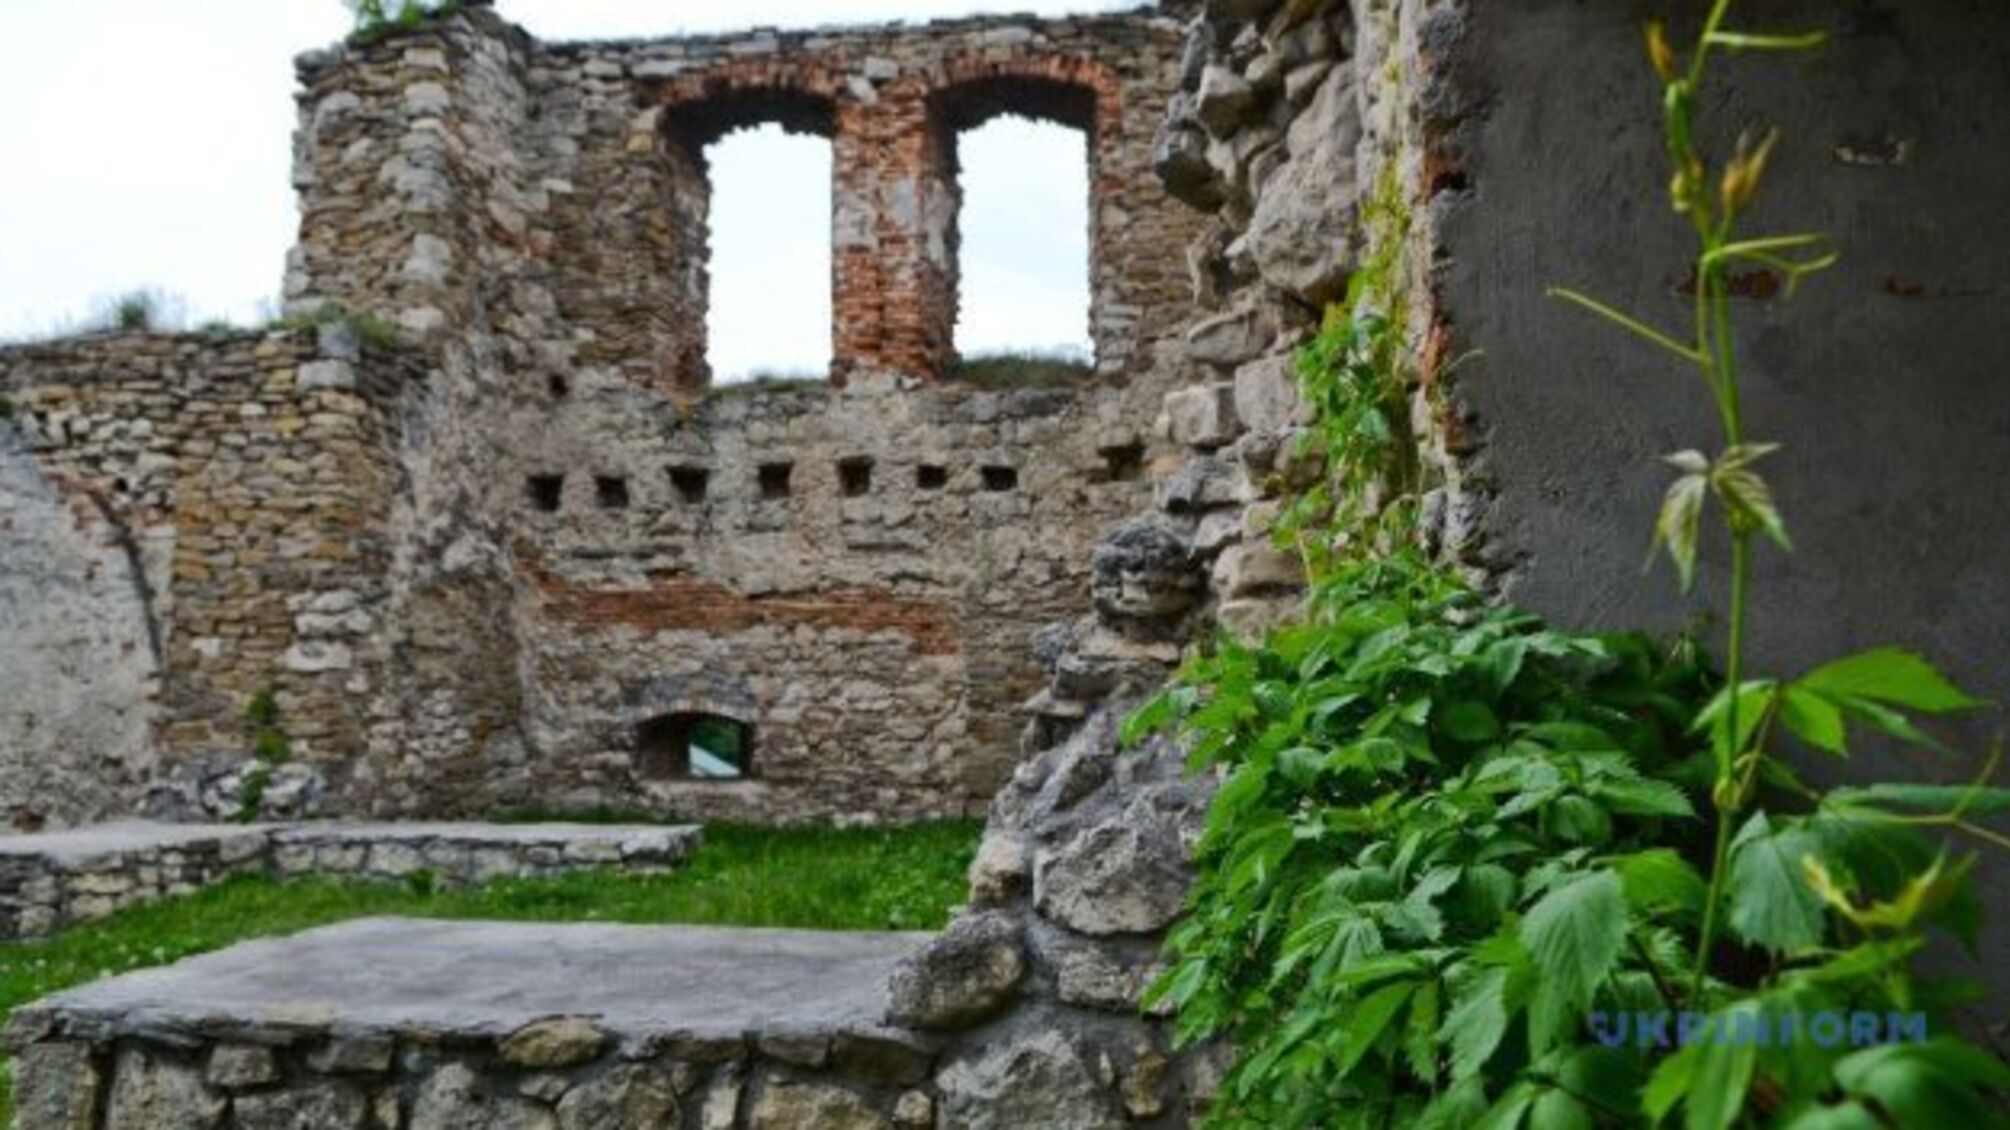 На Тернопільщині почали реставрацію Чортківського замку